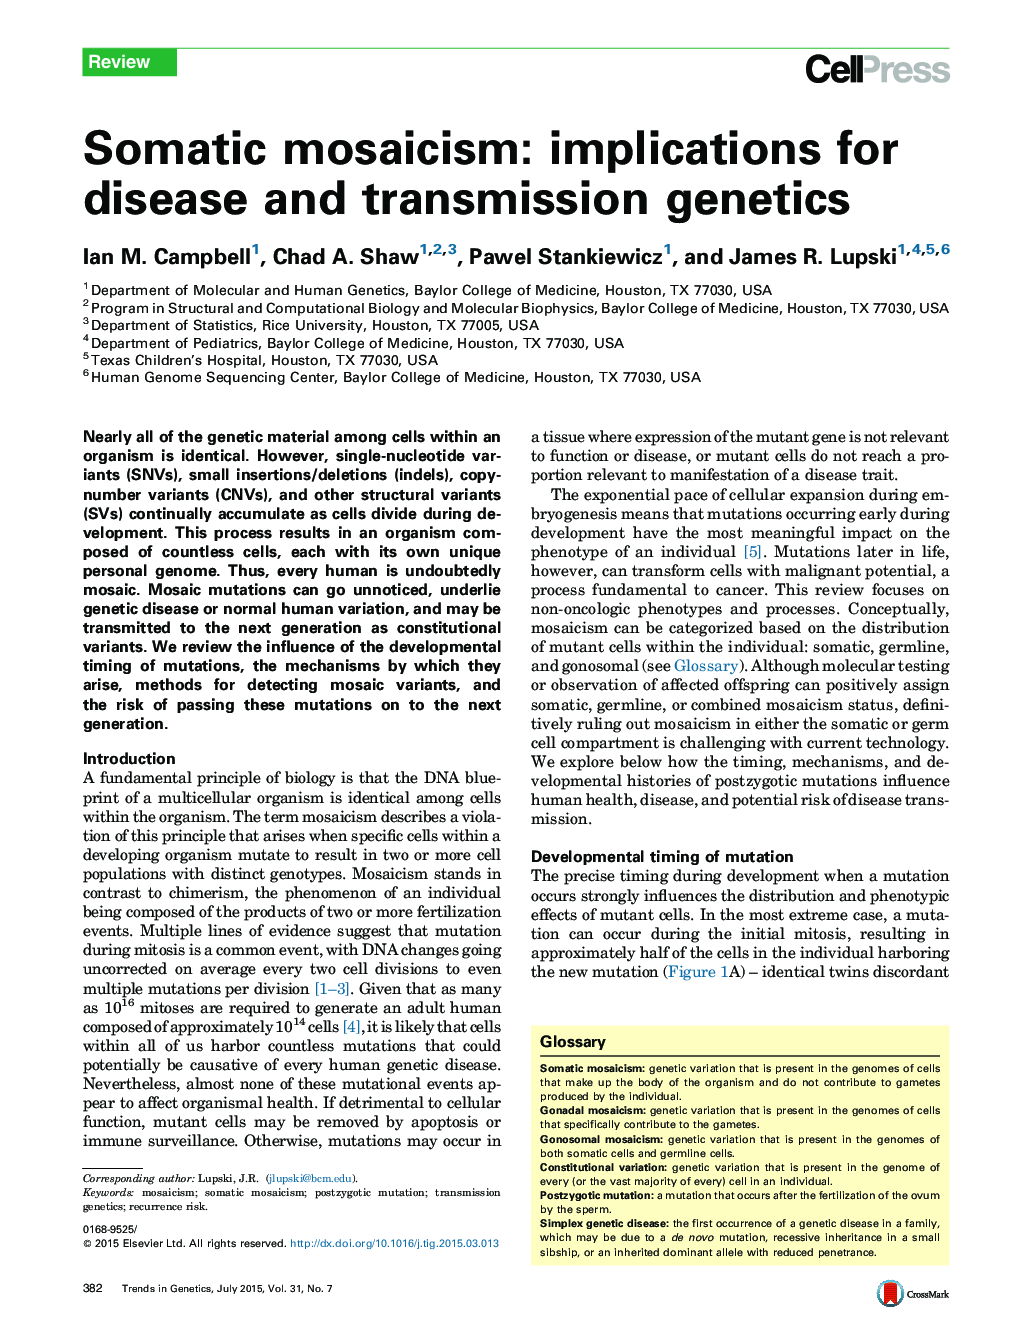 موزاییکایی سومی: پیامدهای بیماری و انتقال ژنتیک 